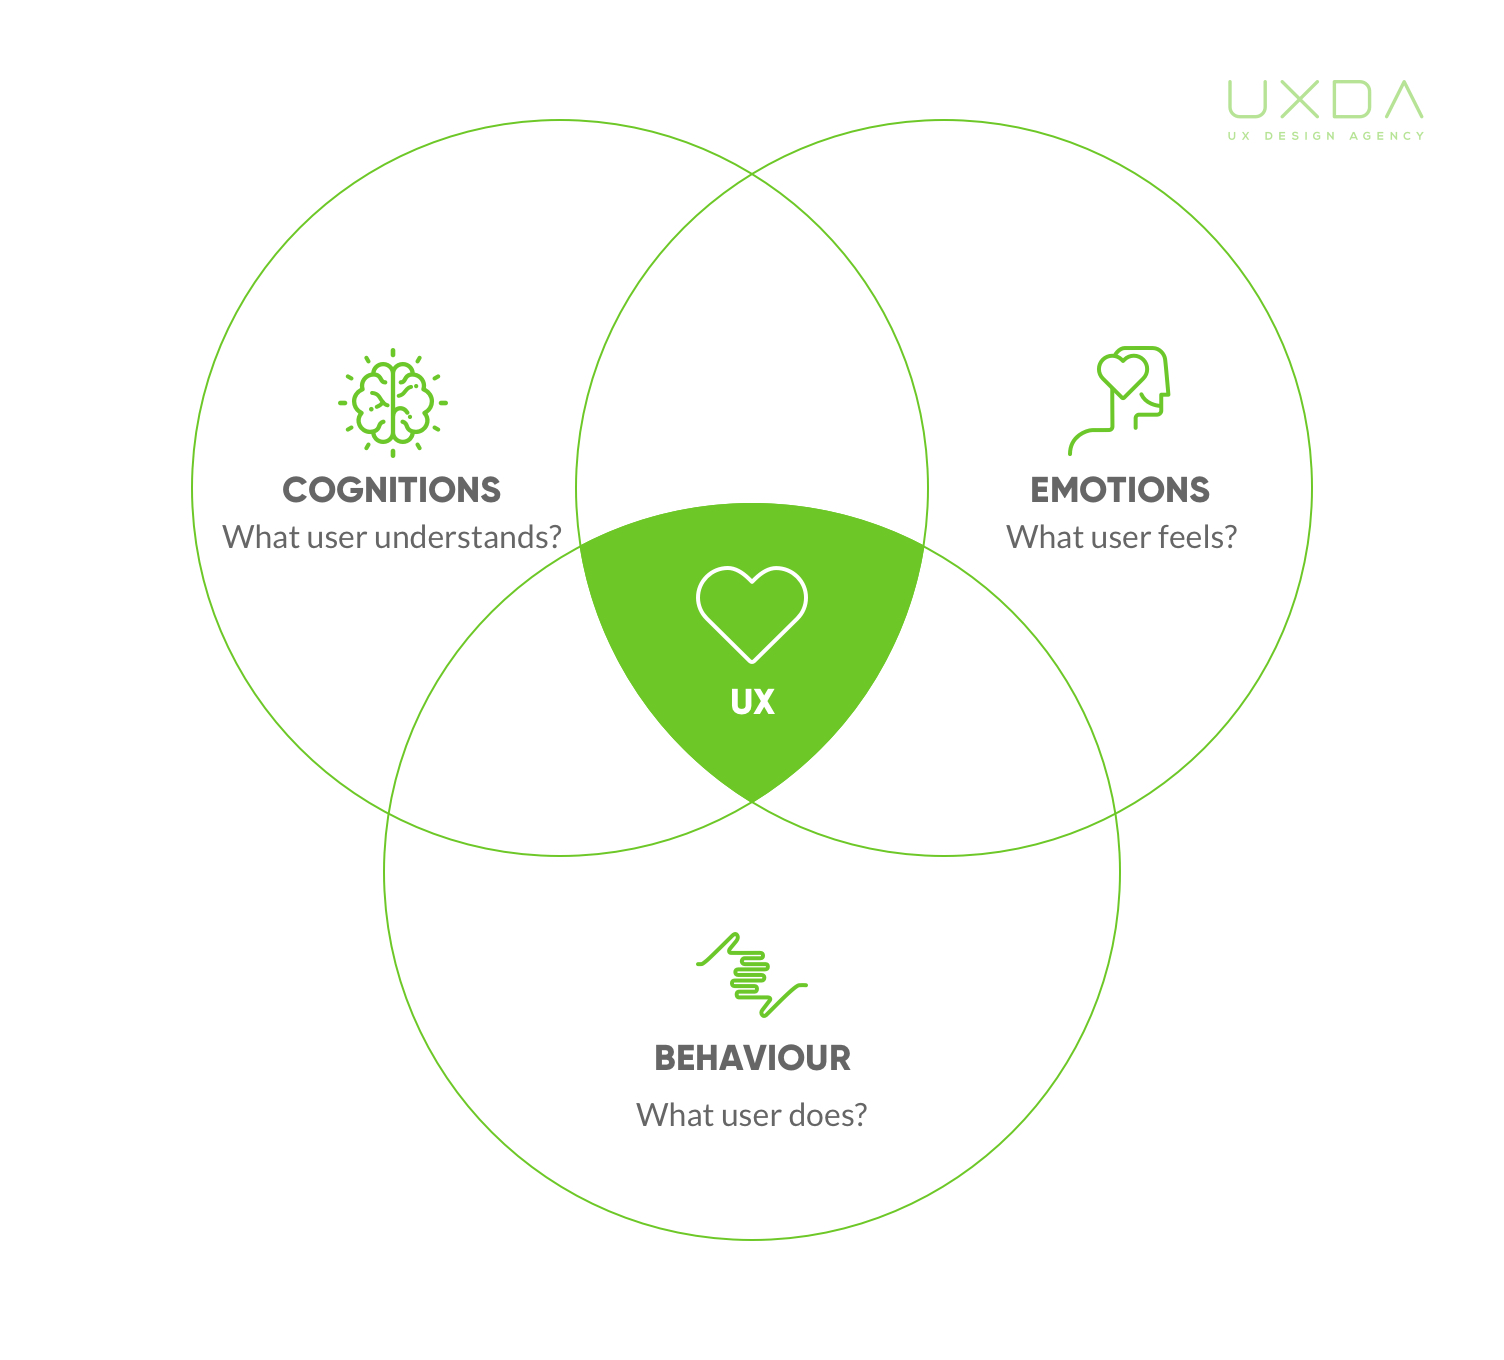 ux-design-for-banking-uxda-methodology-22-S.jpg